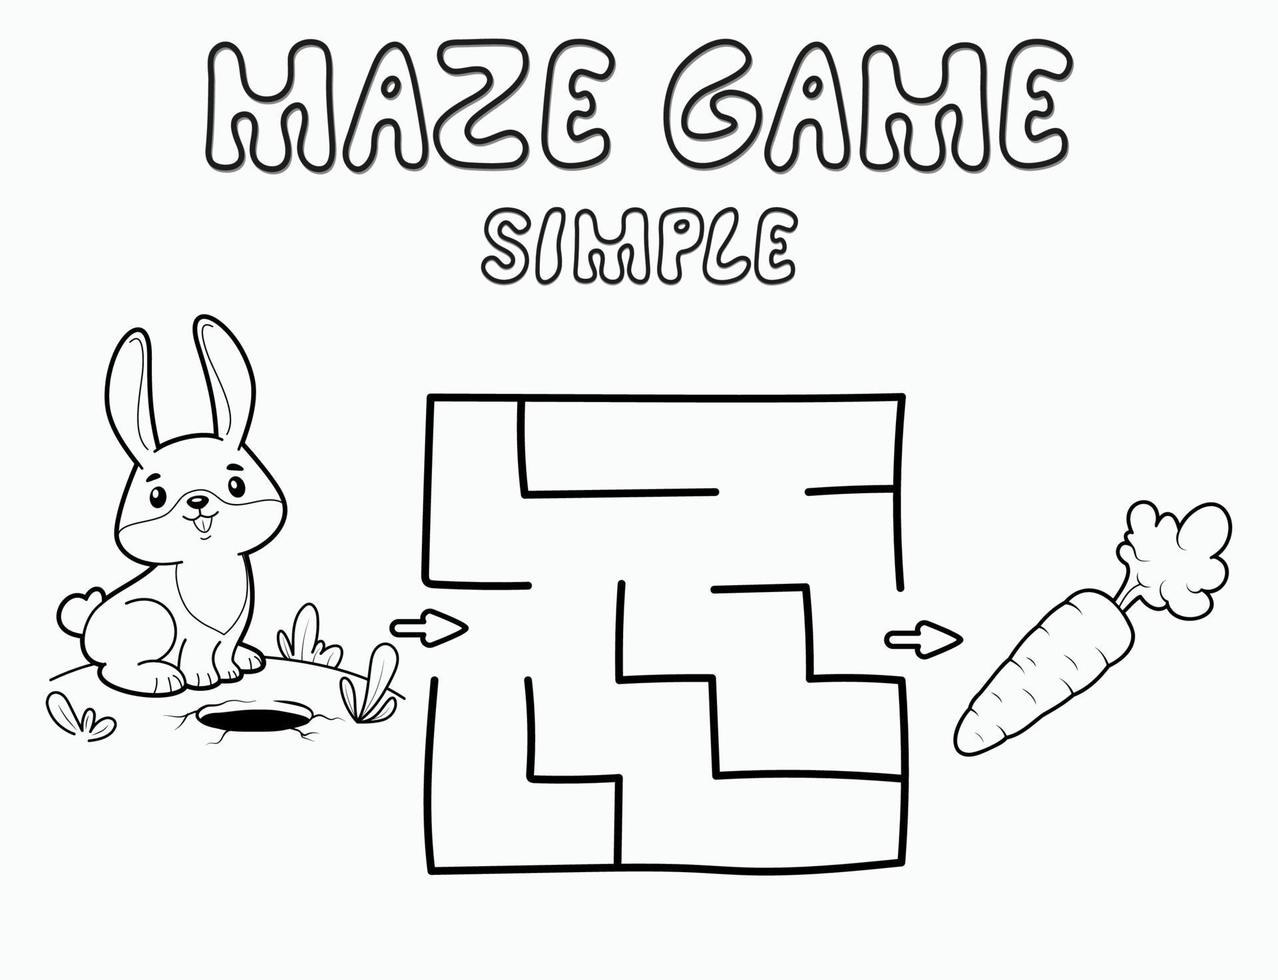 einfaches Labyrinth-Puzzle-Spiel für Kinder. Skizzieren Sie ein einfaches Labyrinth- oder Labyrinthspiel mit Kaninchen. vektor